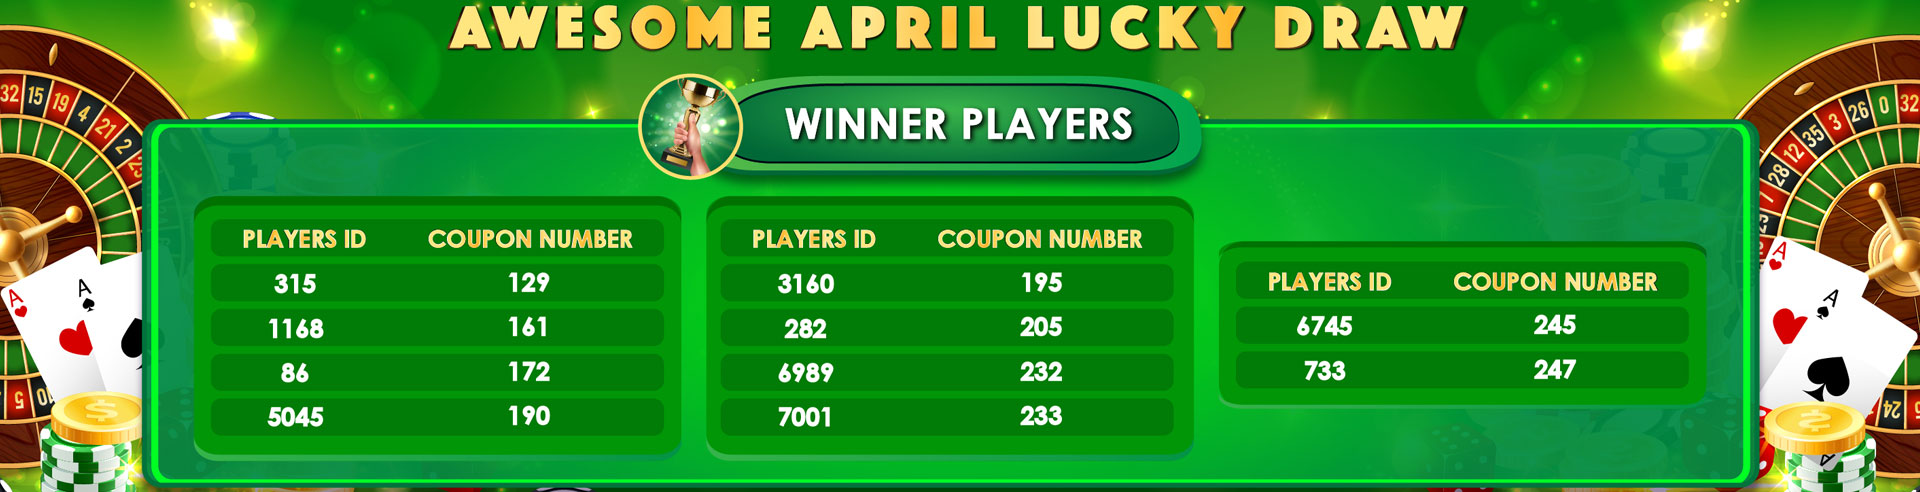 April-Lucku-Draw-Winner-Baazi